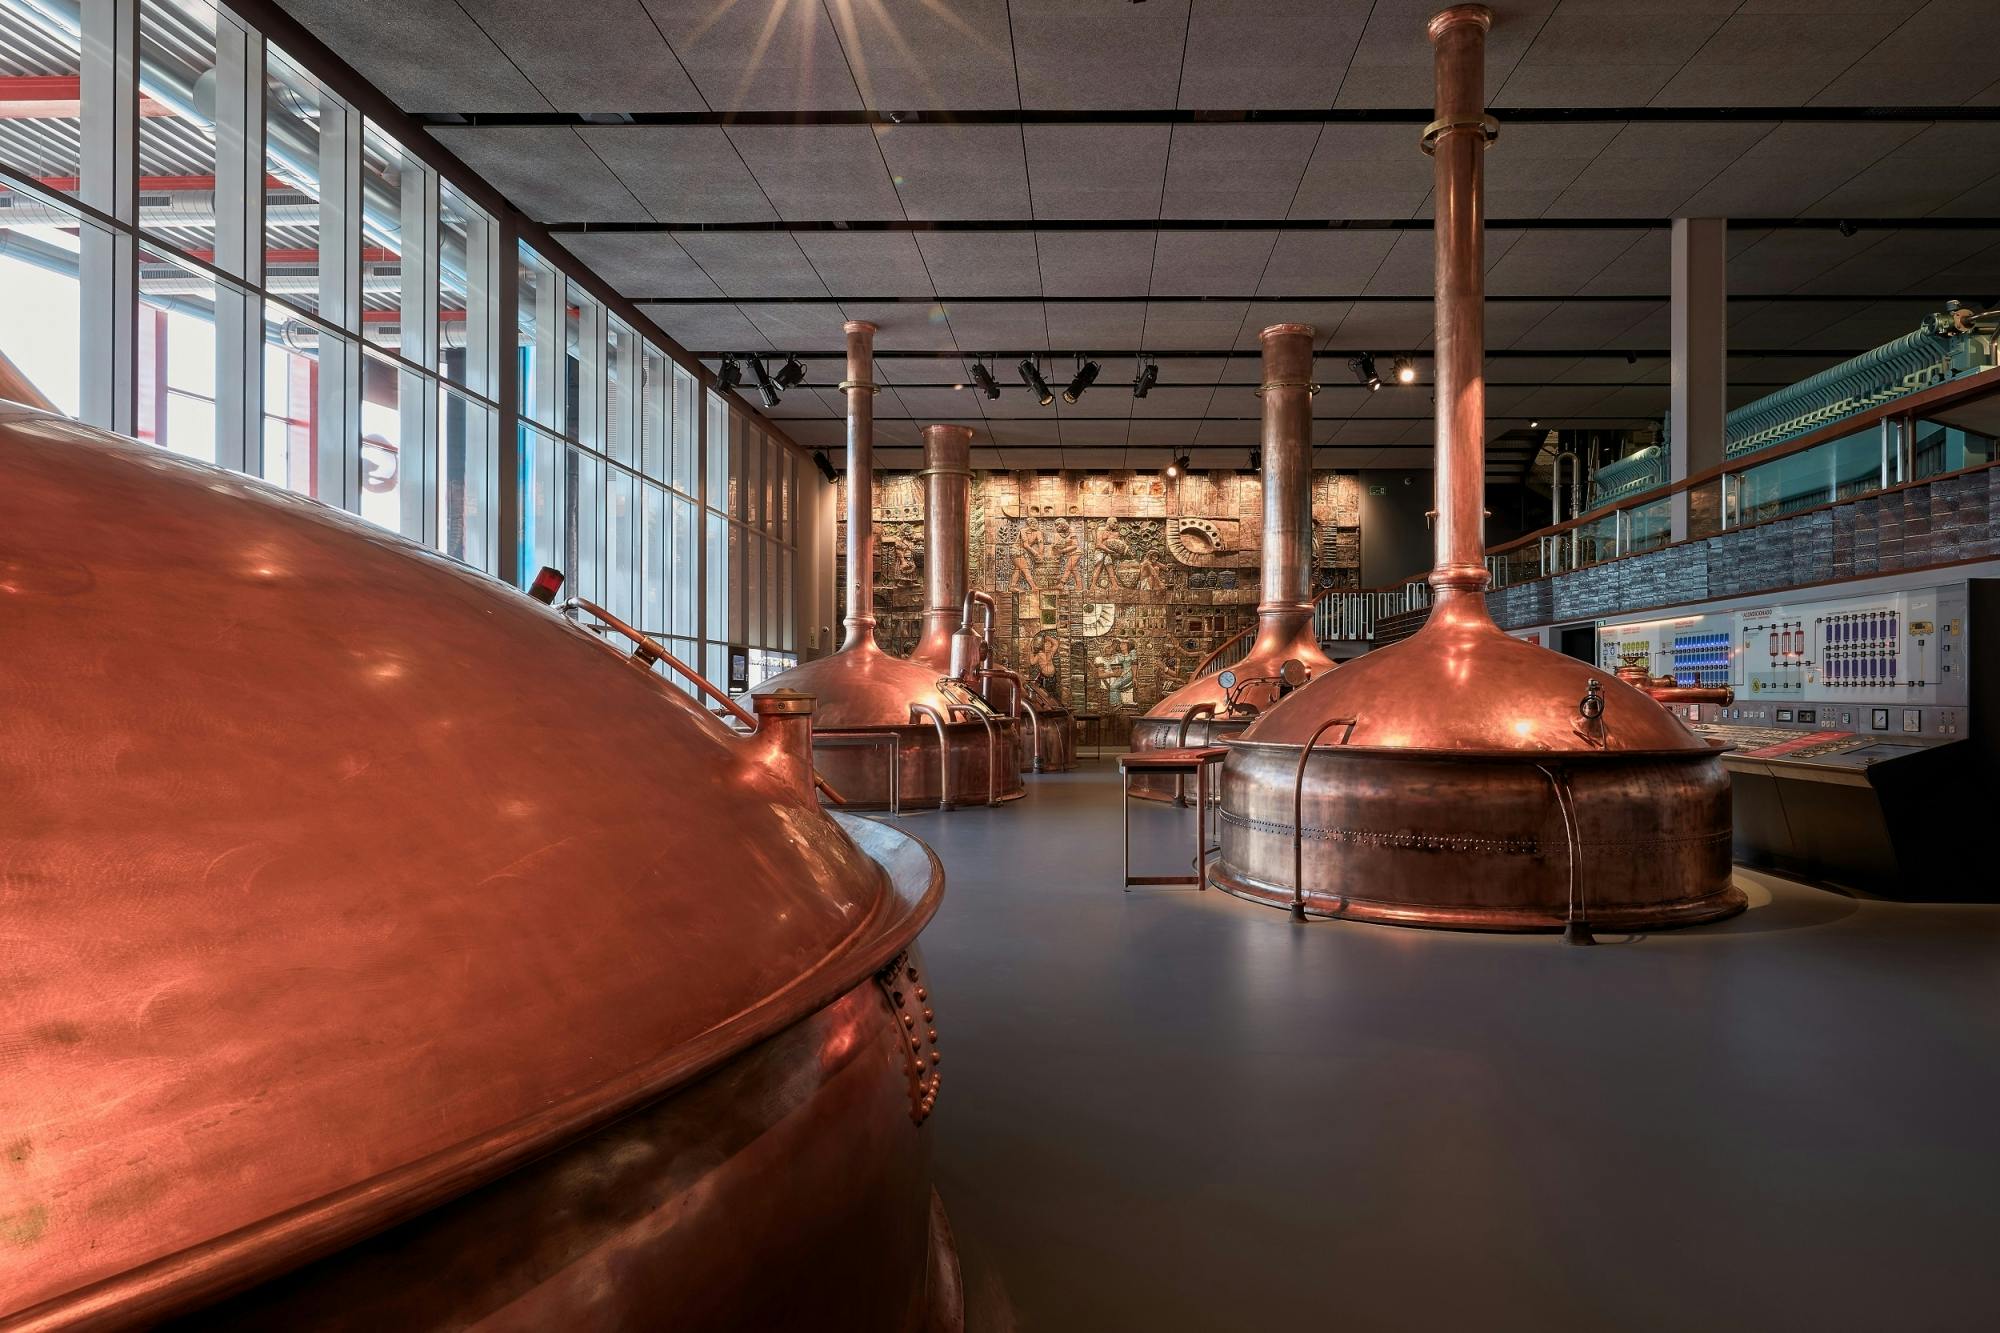 Visita guiada ao Museu Estrella Galicia com degustação de cervejas e enchidos